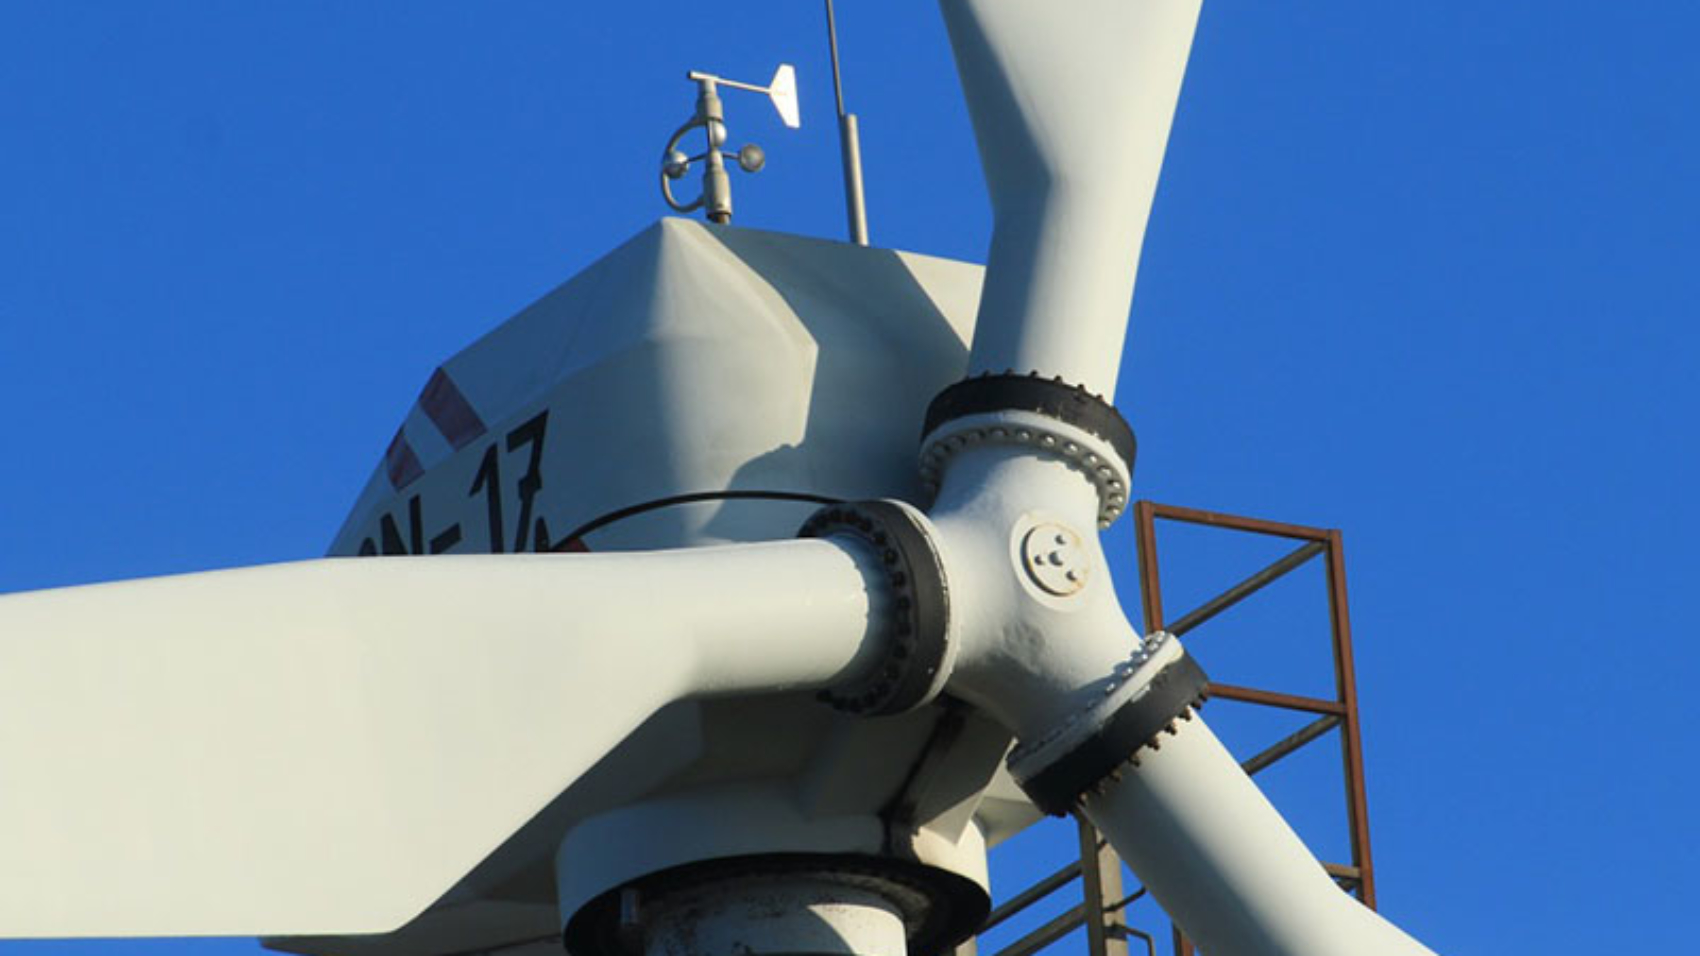 Wind Turbine Energy